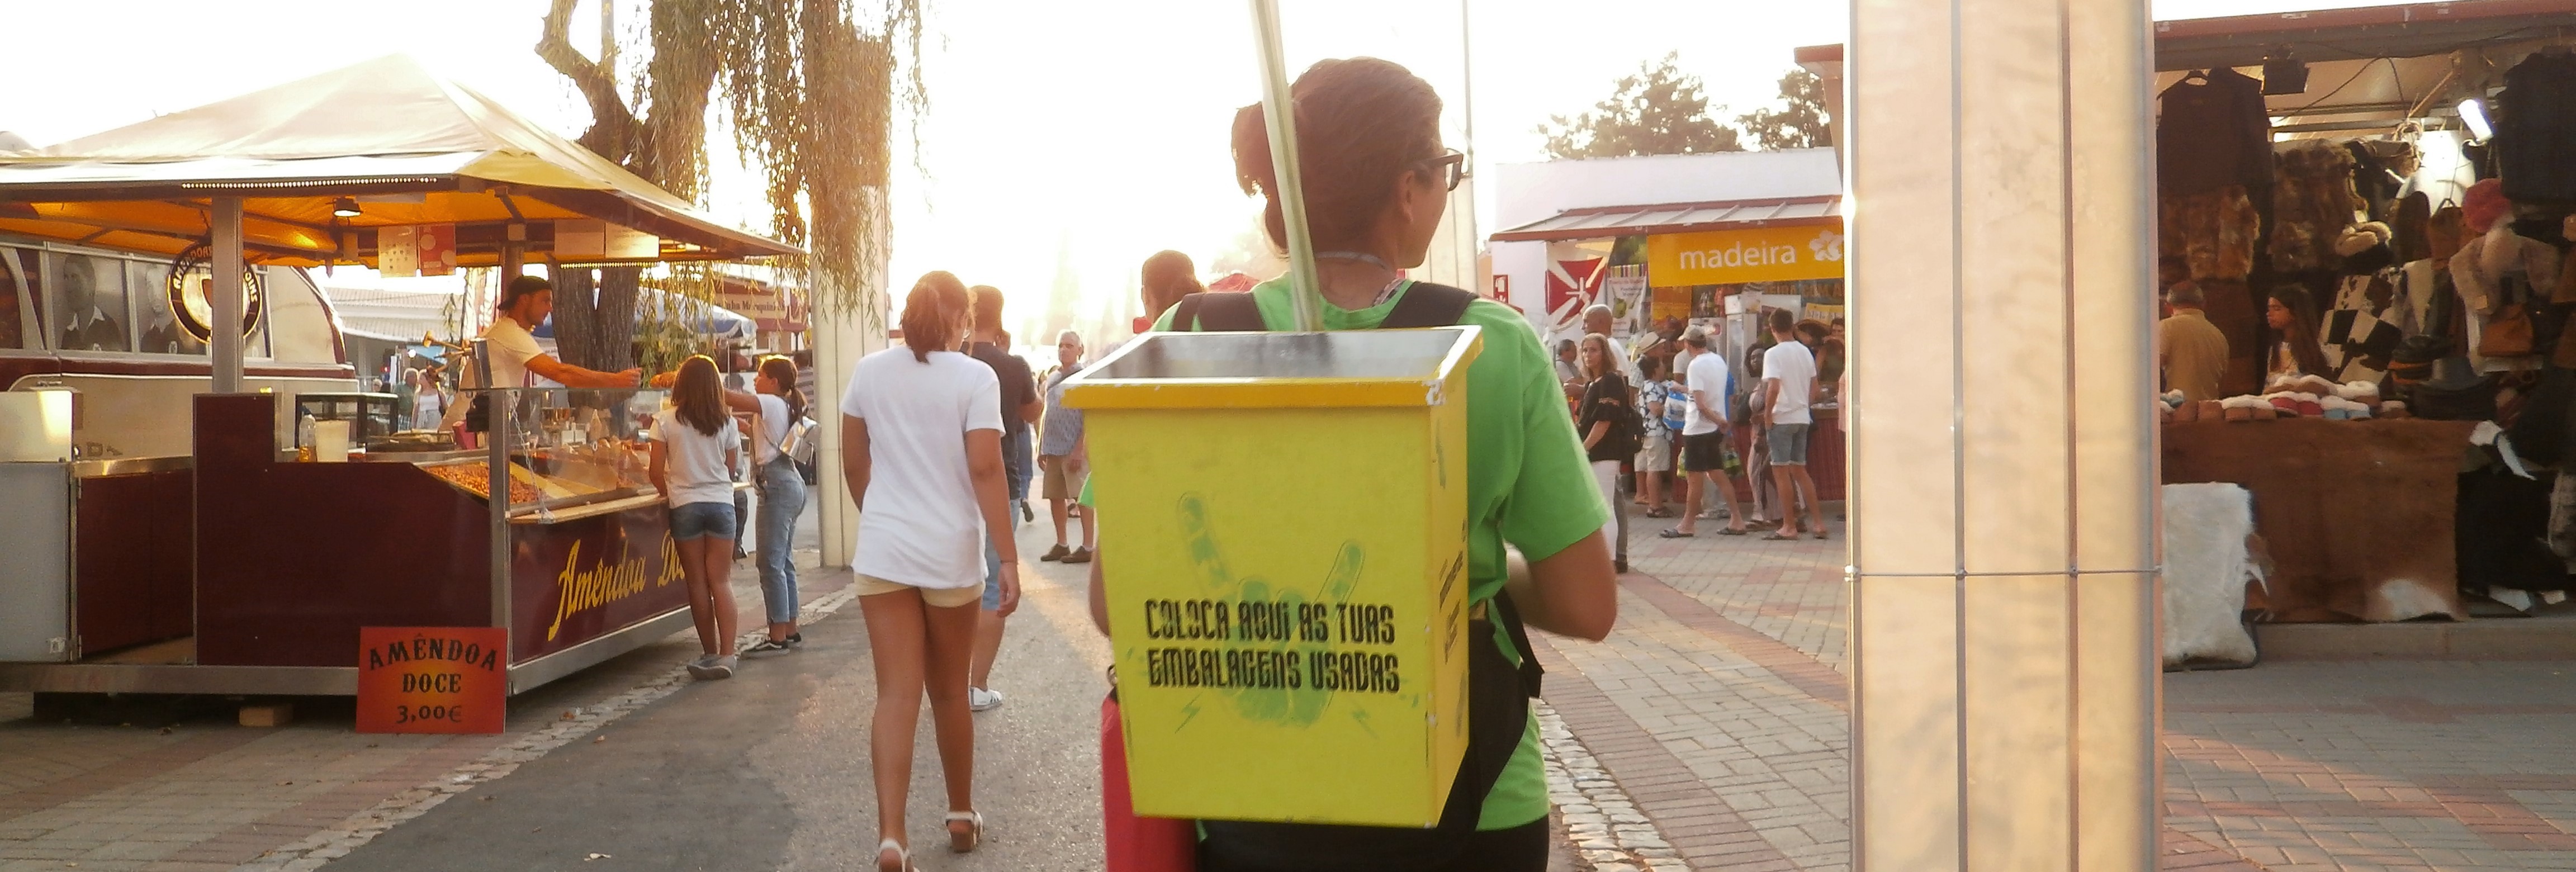 Sociedade Ponto Verde põe Portugueses a Reciclar de Norte a Sul